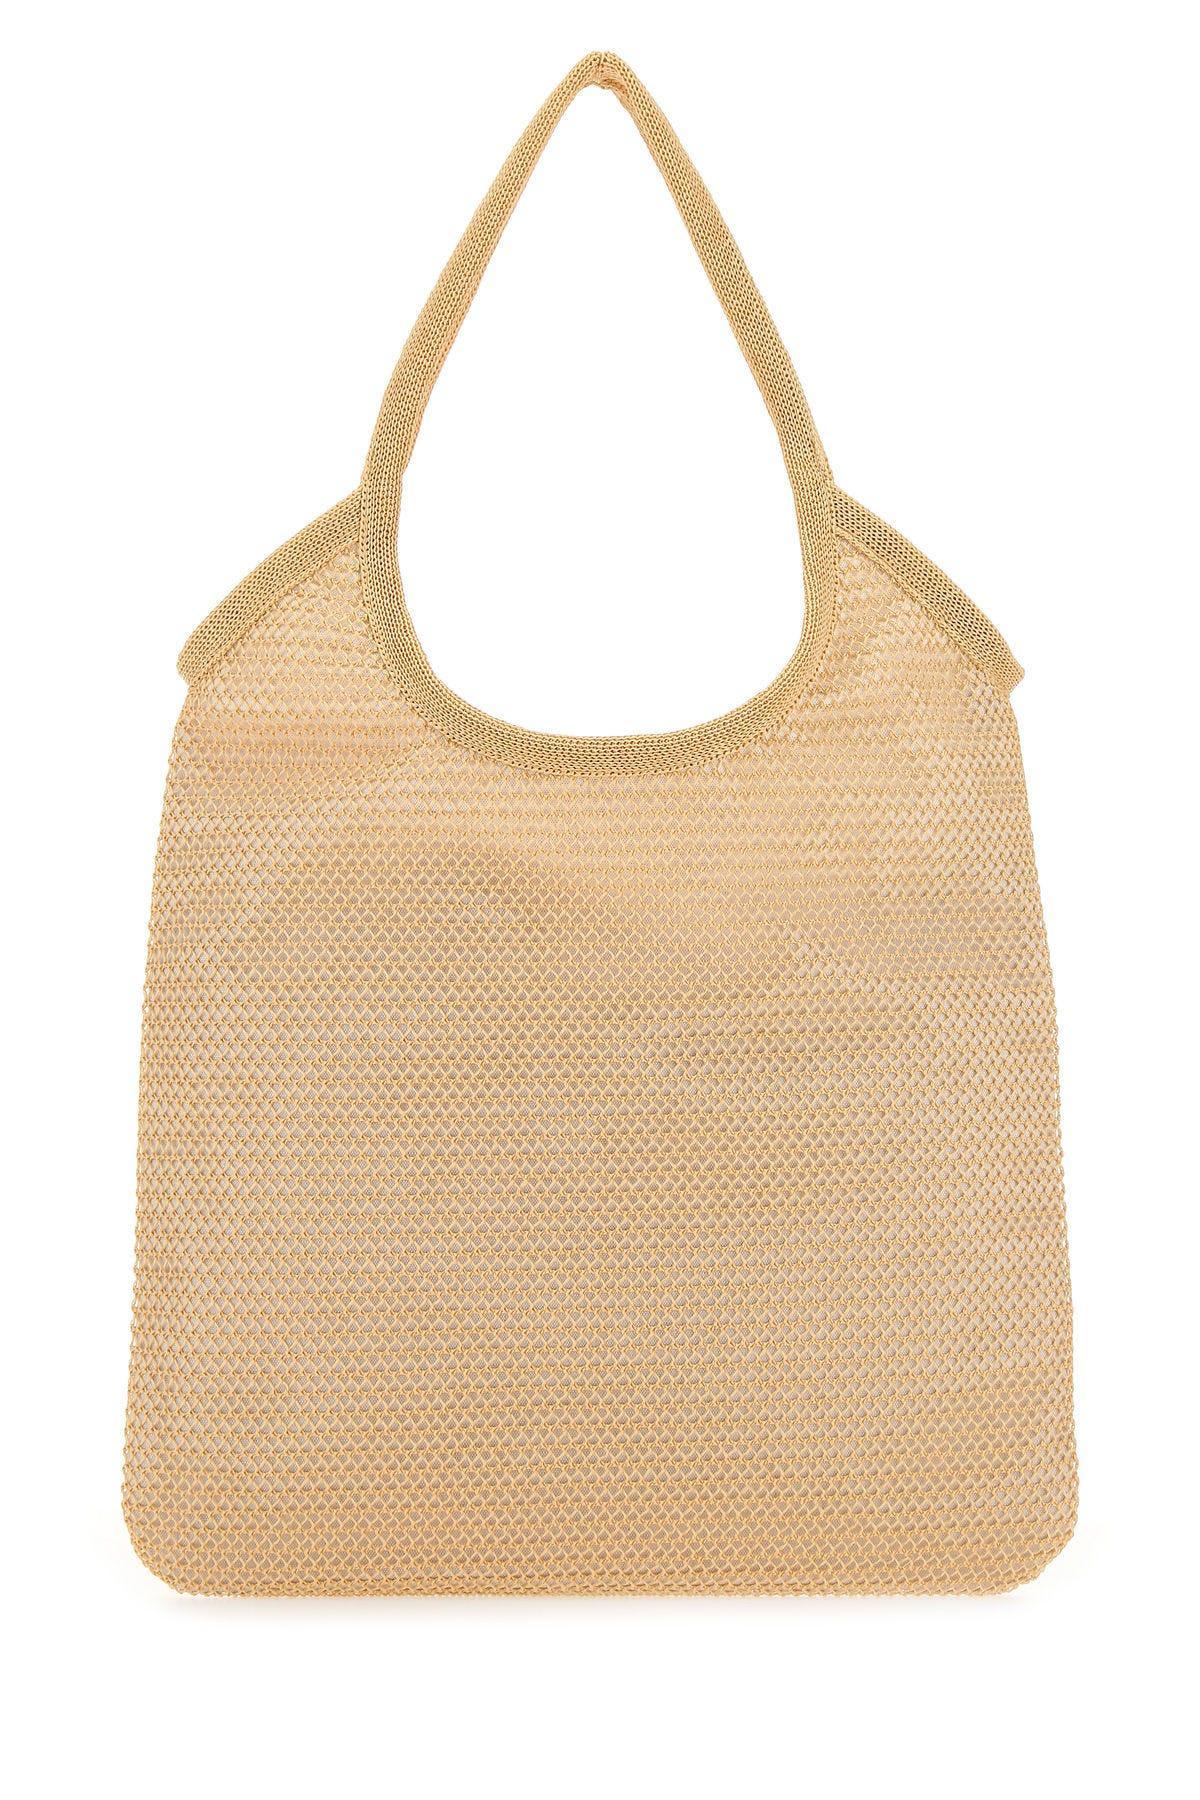 Miu Miu Raffia Handle Bag - Neutrals Handle Bags, Handbags - MIU180371